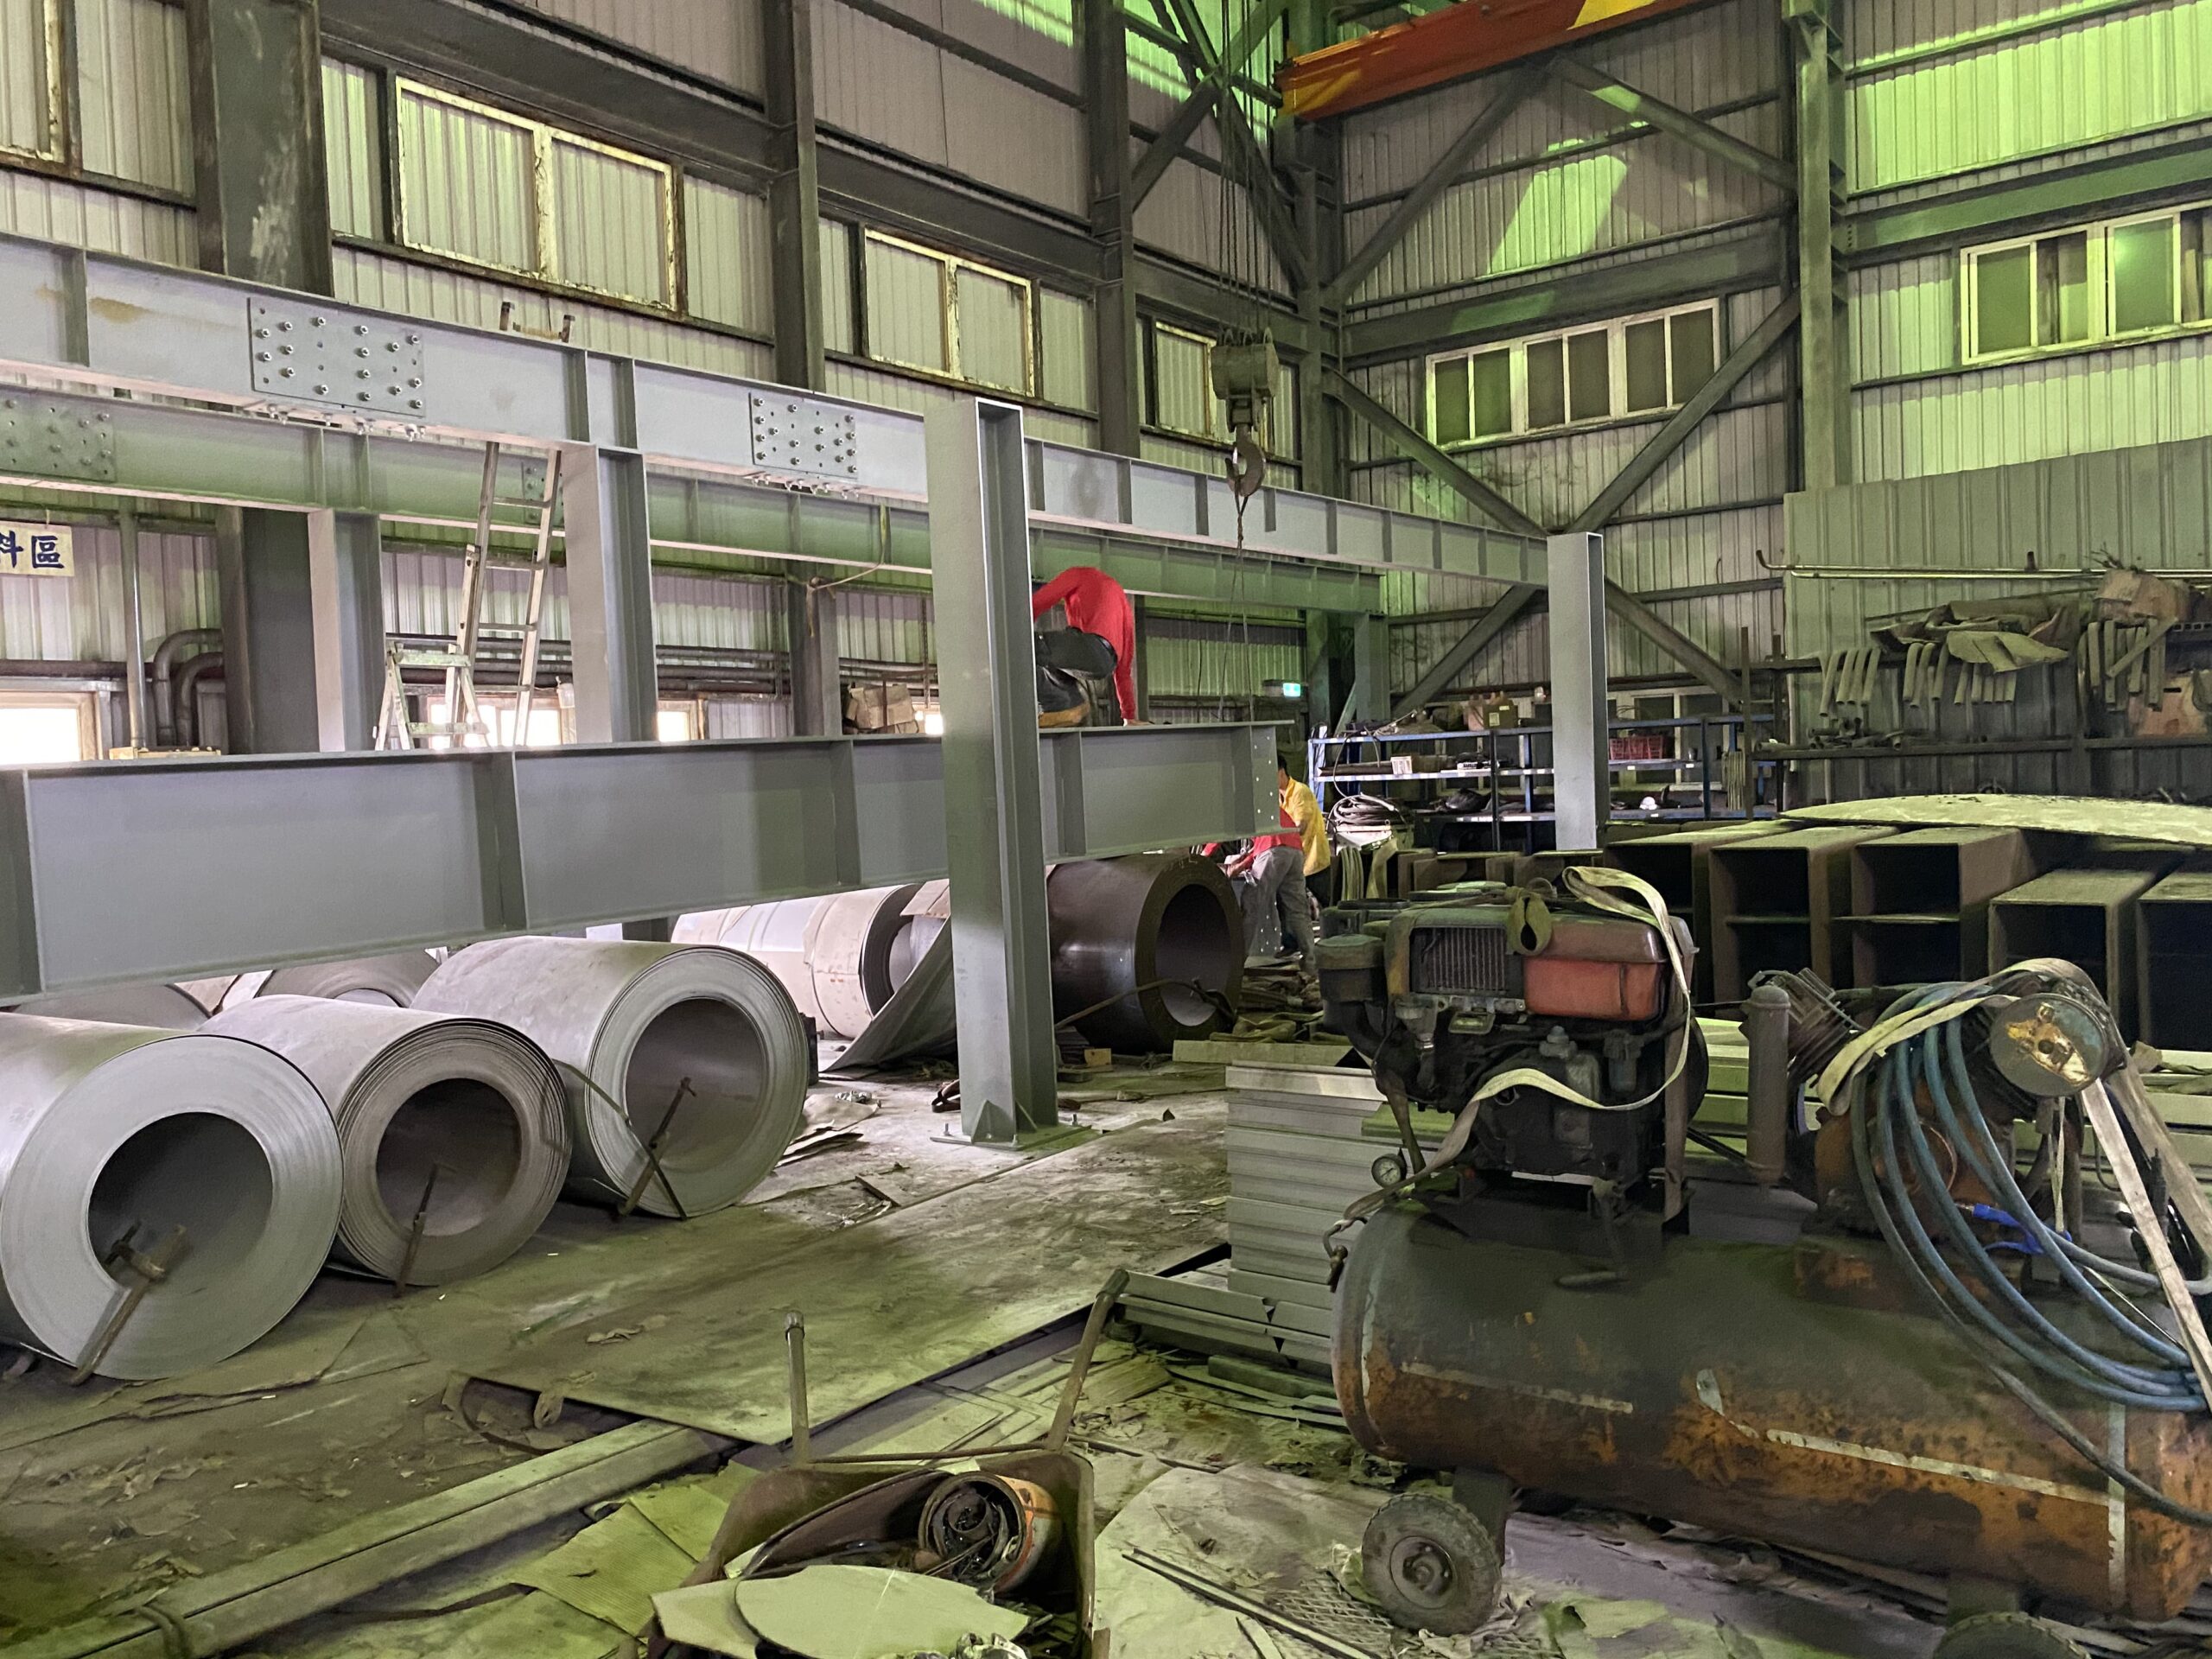 5彰化鋼構-線西鄉-保樫工業-鋼構增建-鋼構工程-實績案例圖